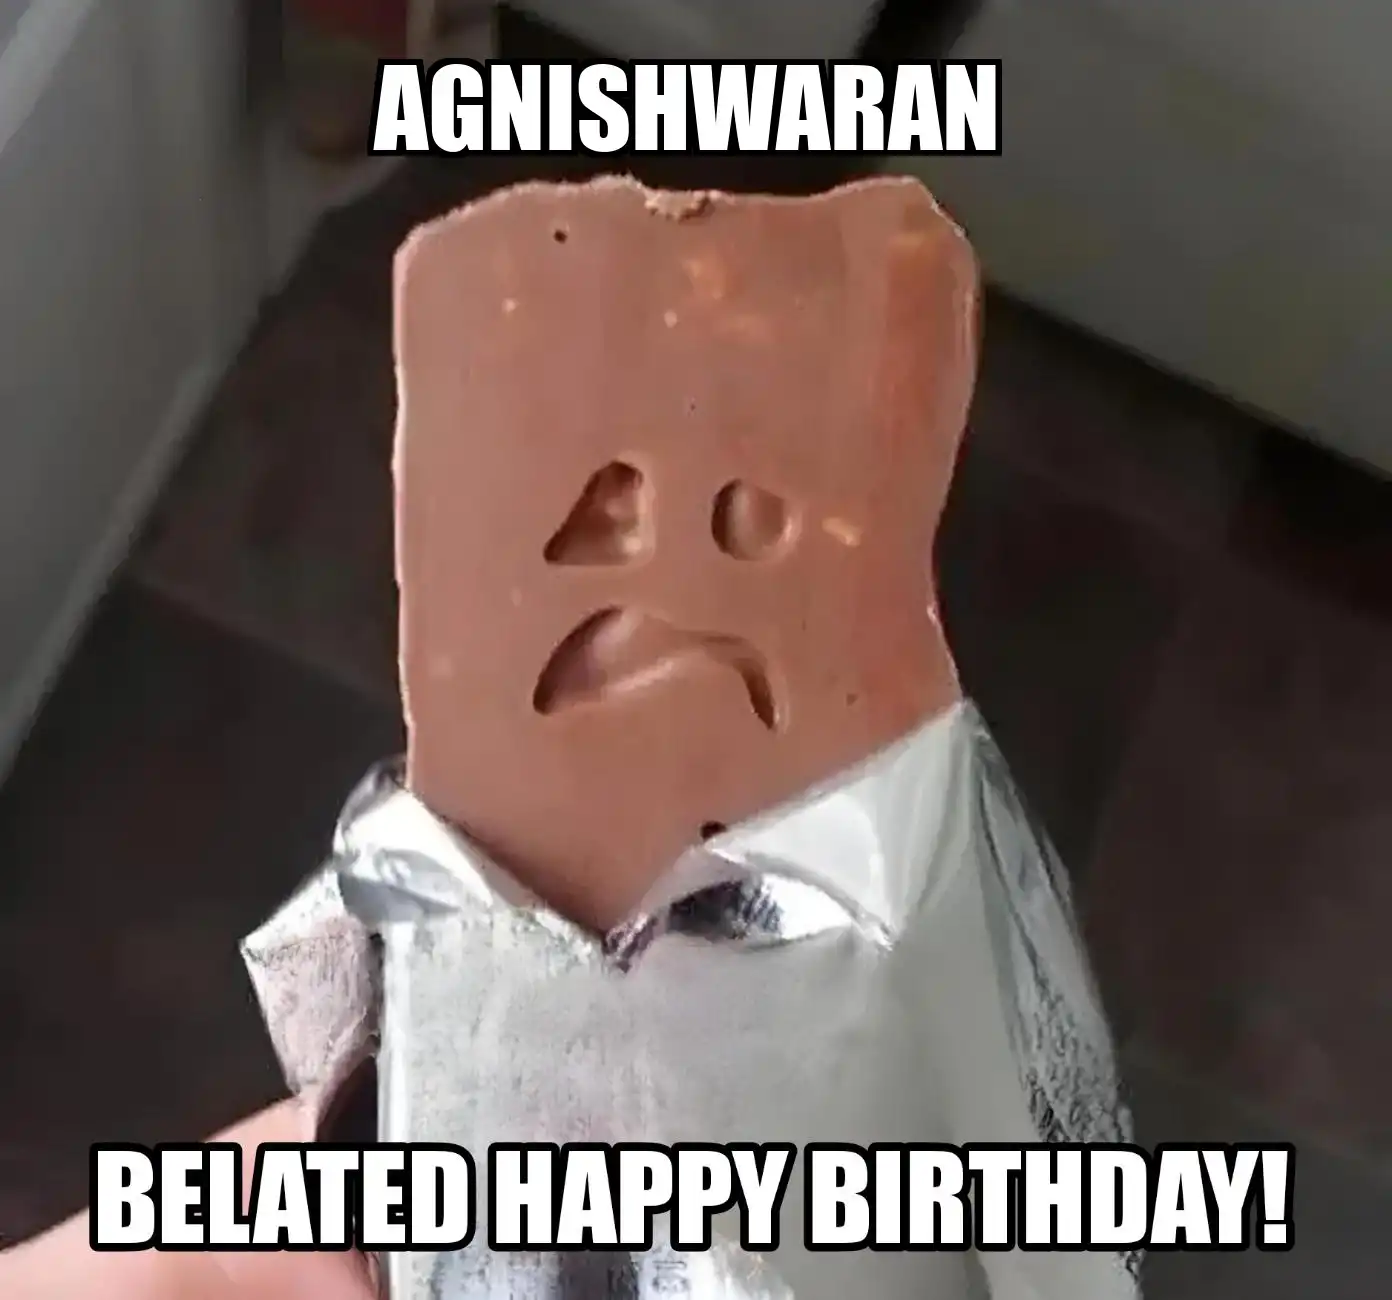 Happy Birthday Agnishwaran Belated Happy Birthday Meme